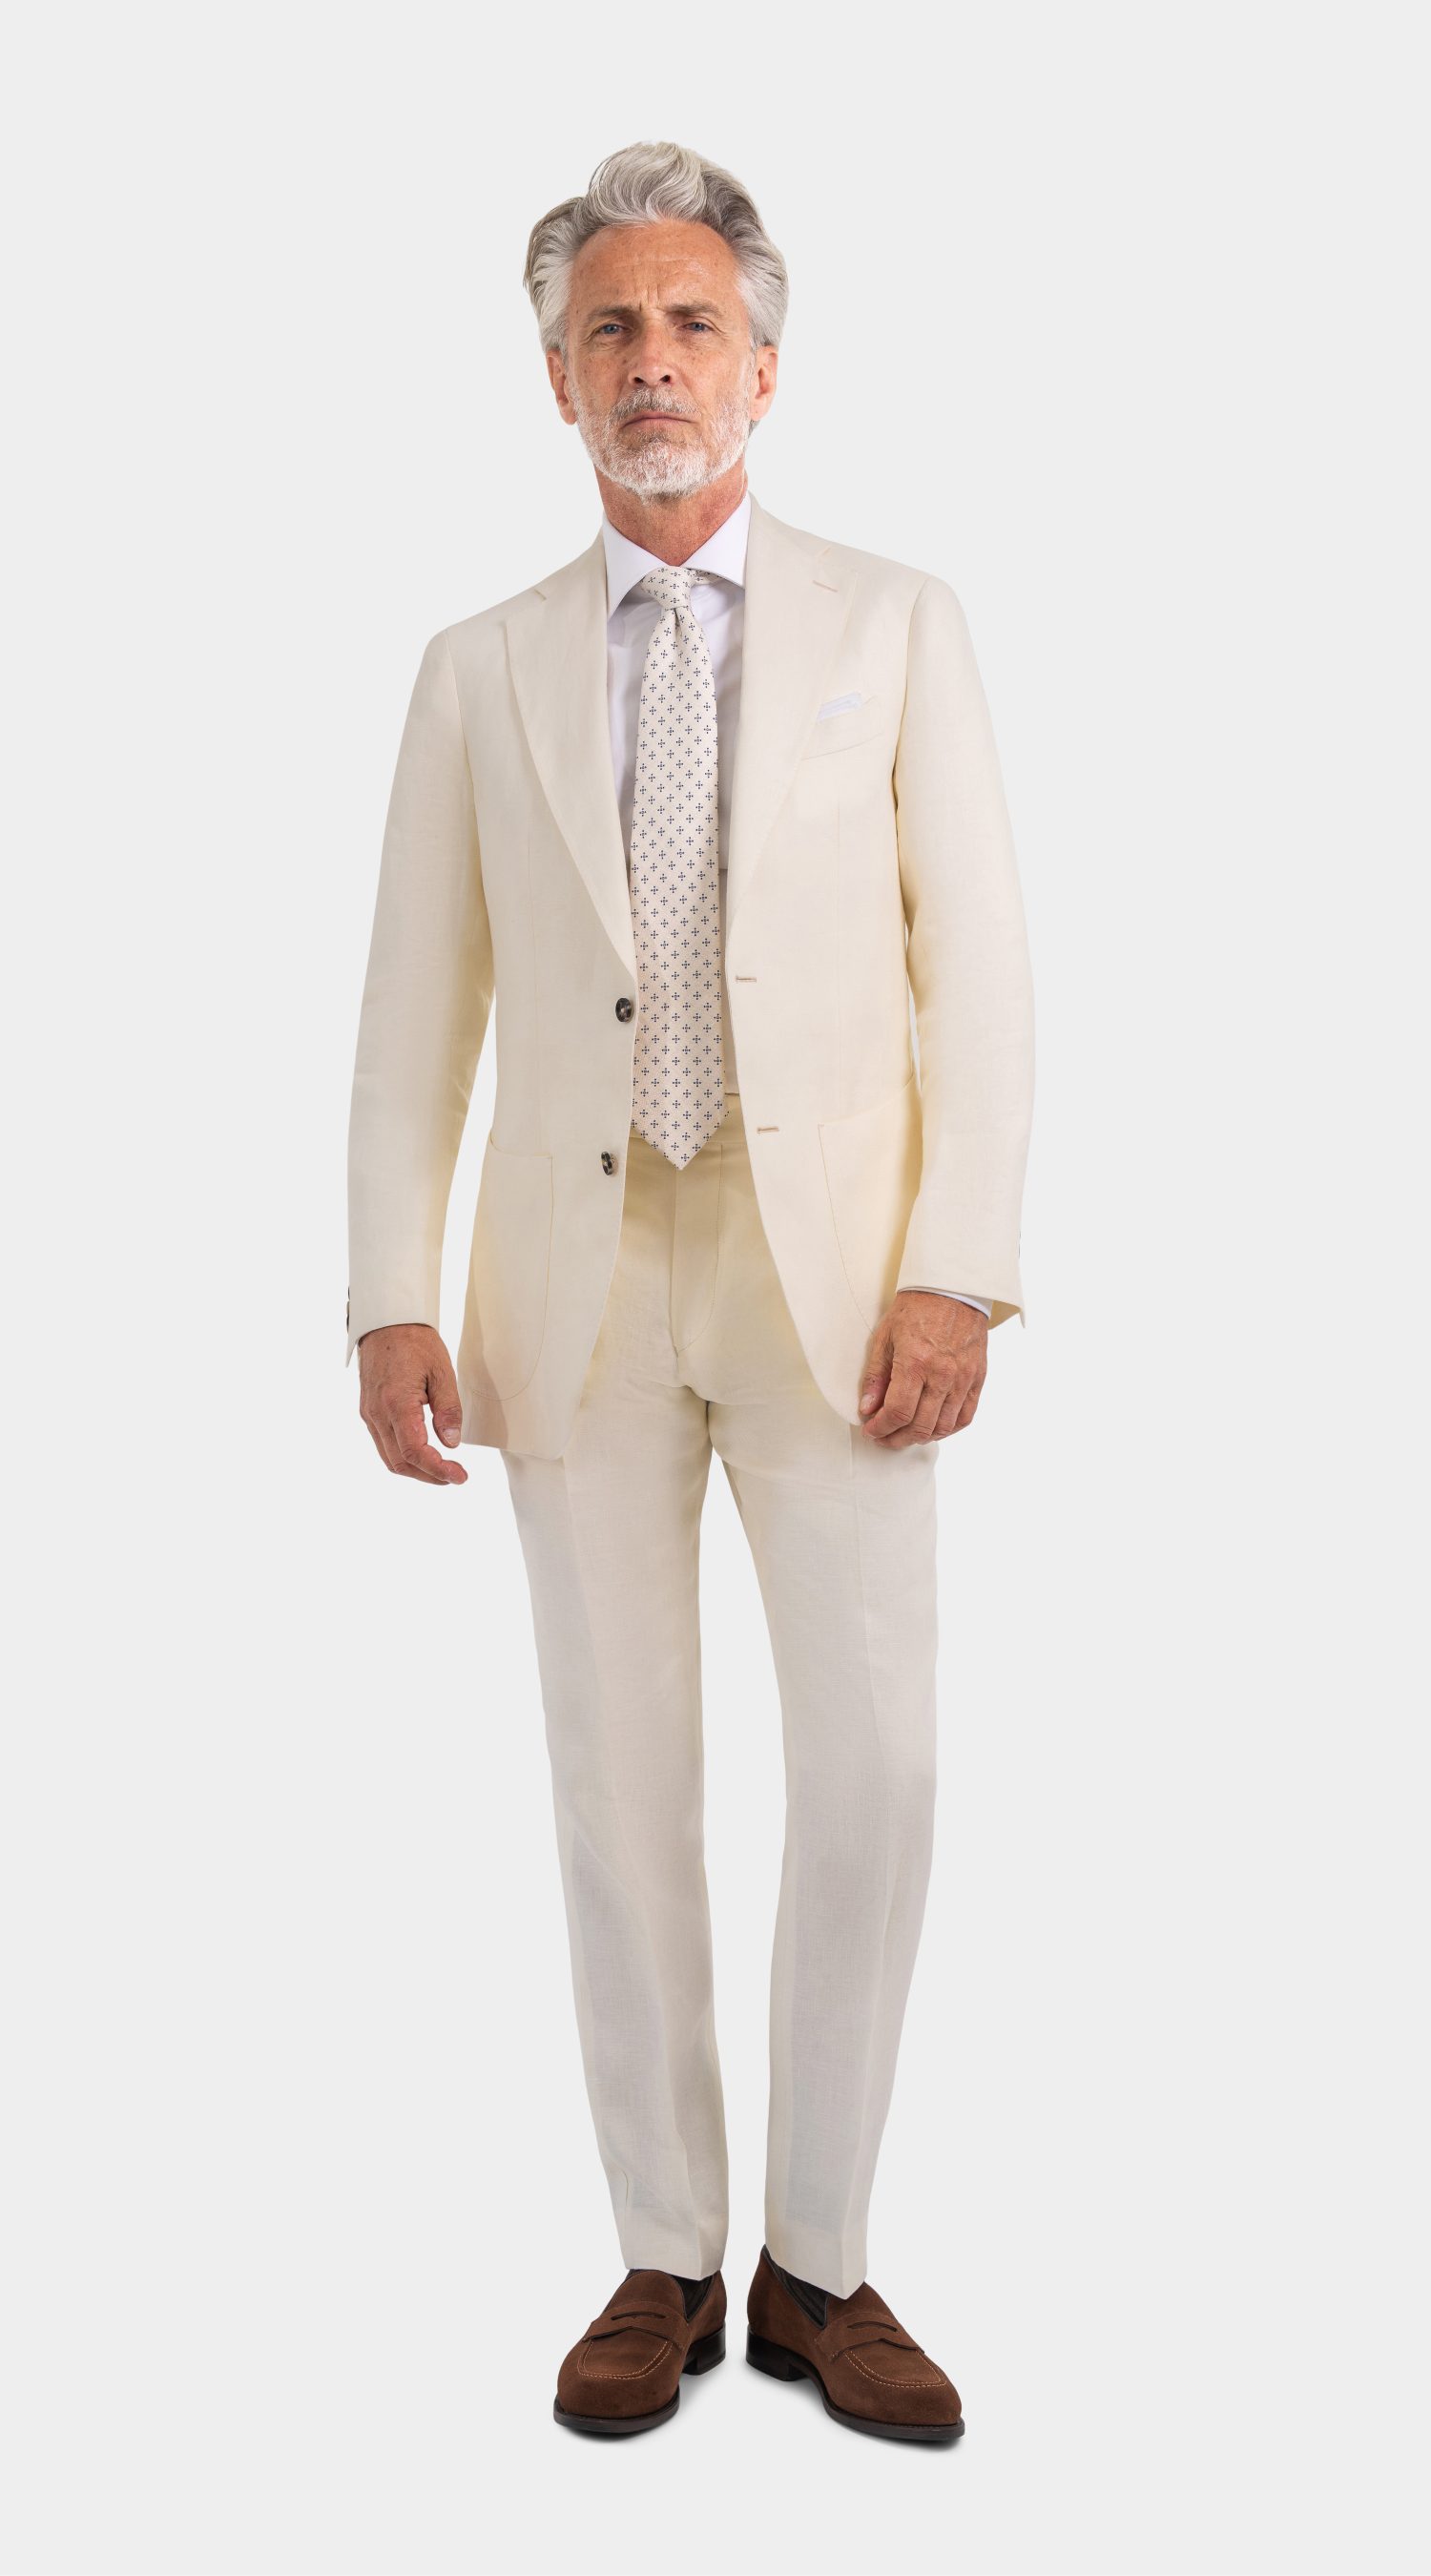 Mond Custom made Ivory Linen Twill Suit, herren anzug creme hochzeit